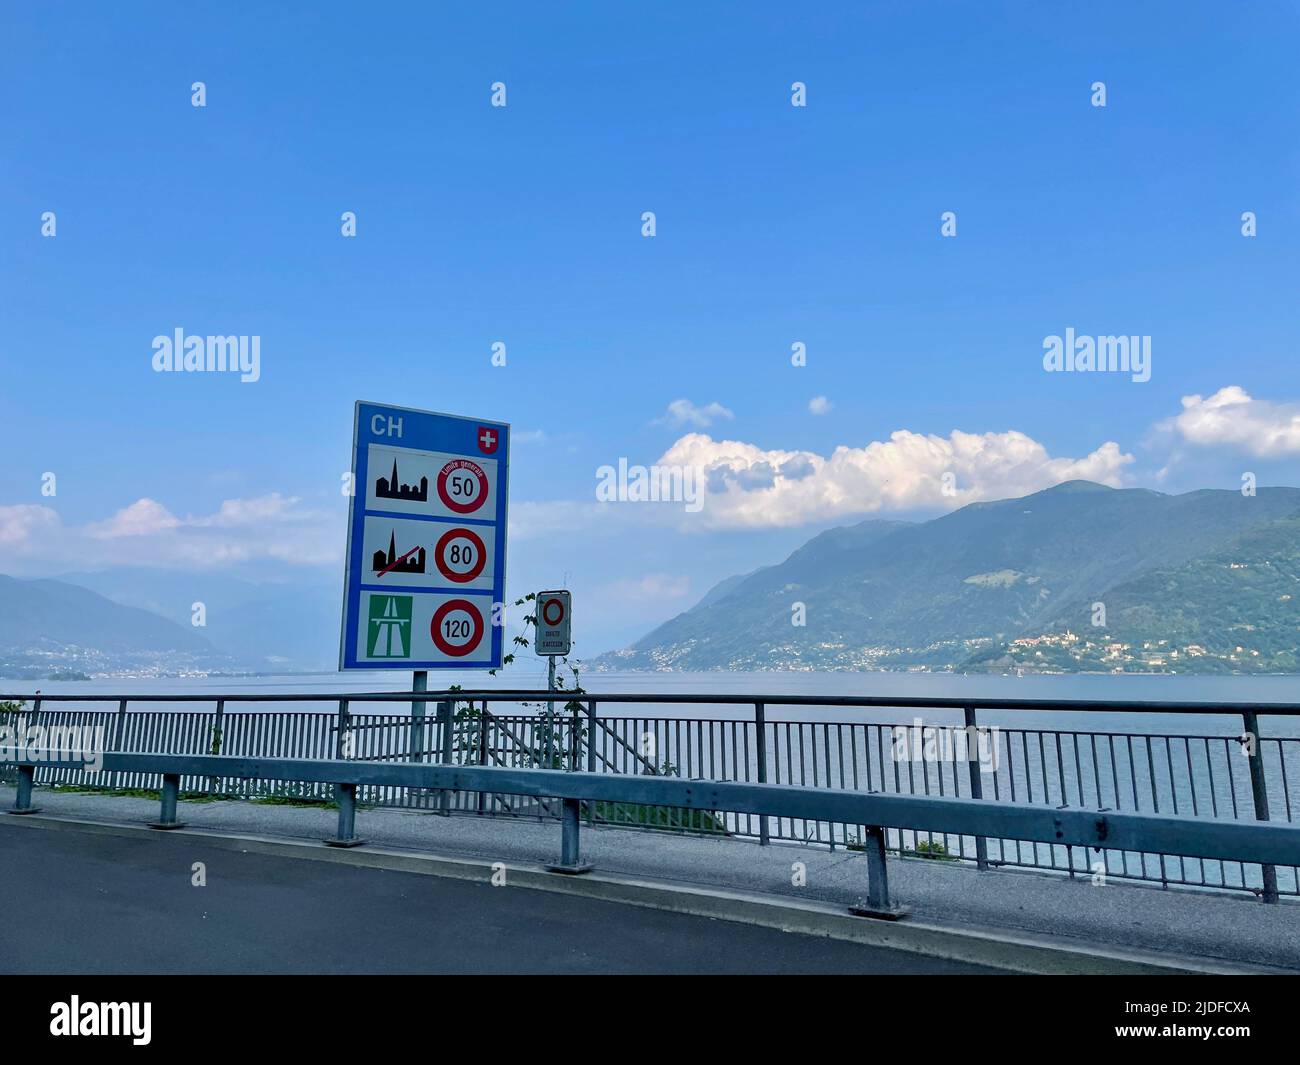 Landesgrenzschild am schweizerisch-italienischen Grenzübergang Valmara Brissago am Lago Maggiore, Piemont, Italien. Stockfoto